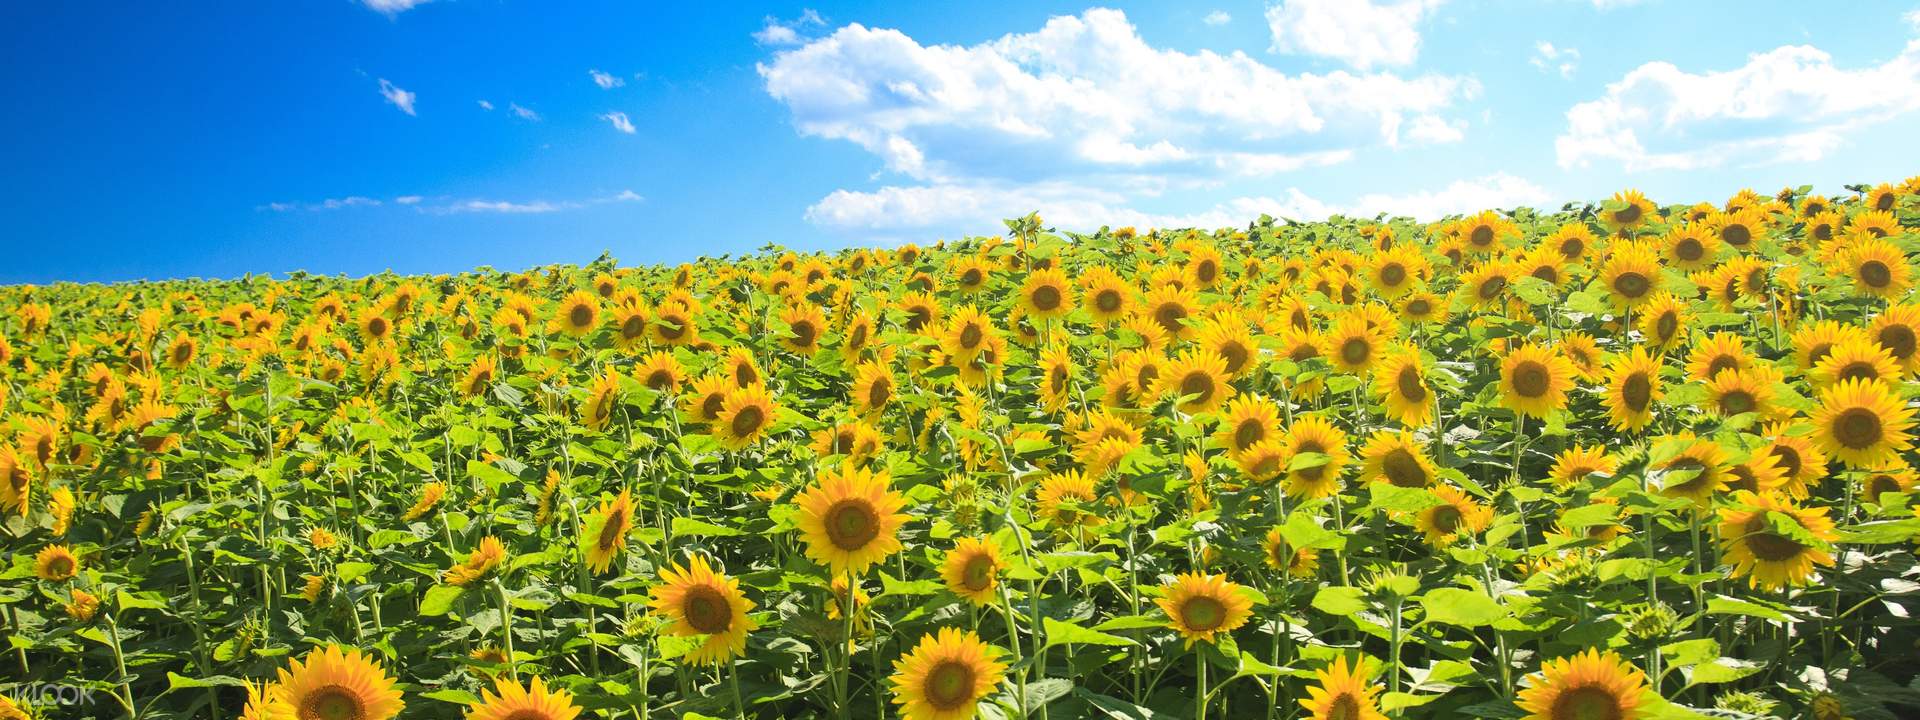 Hokkaido Hokuryu Sunflowers Village, Farm Tomita, and Biei Day Tour ...